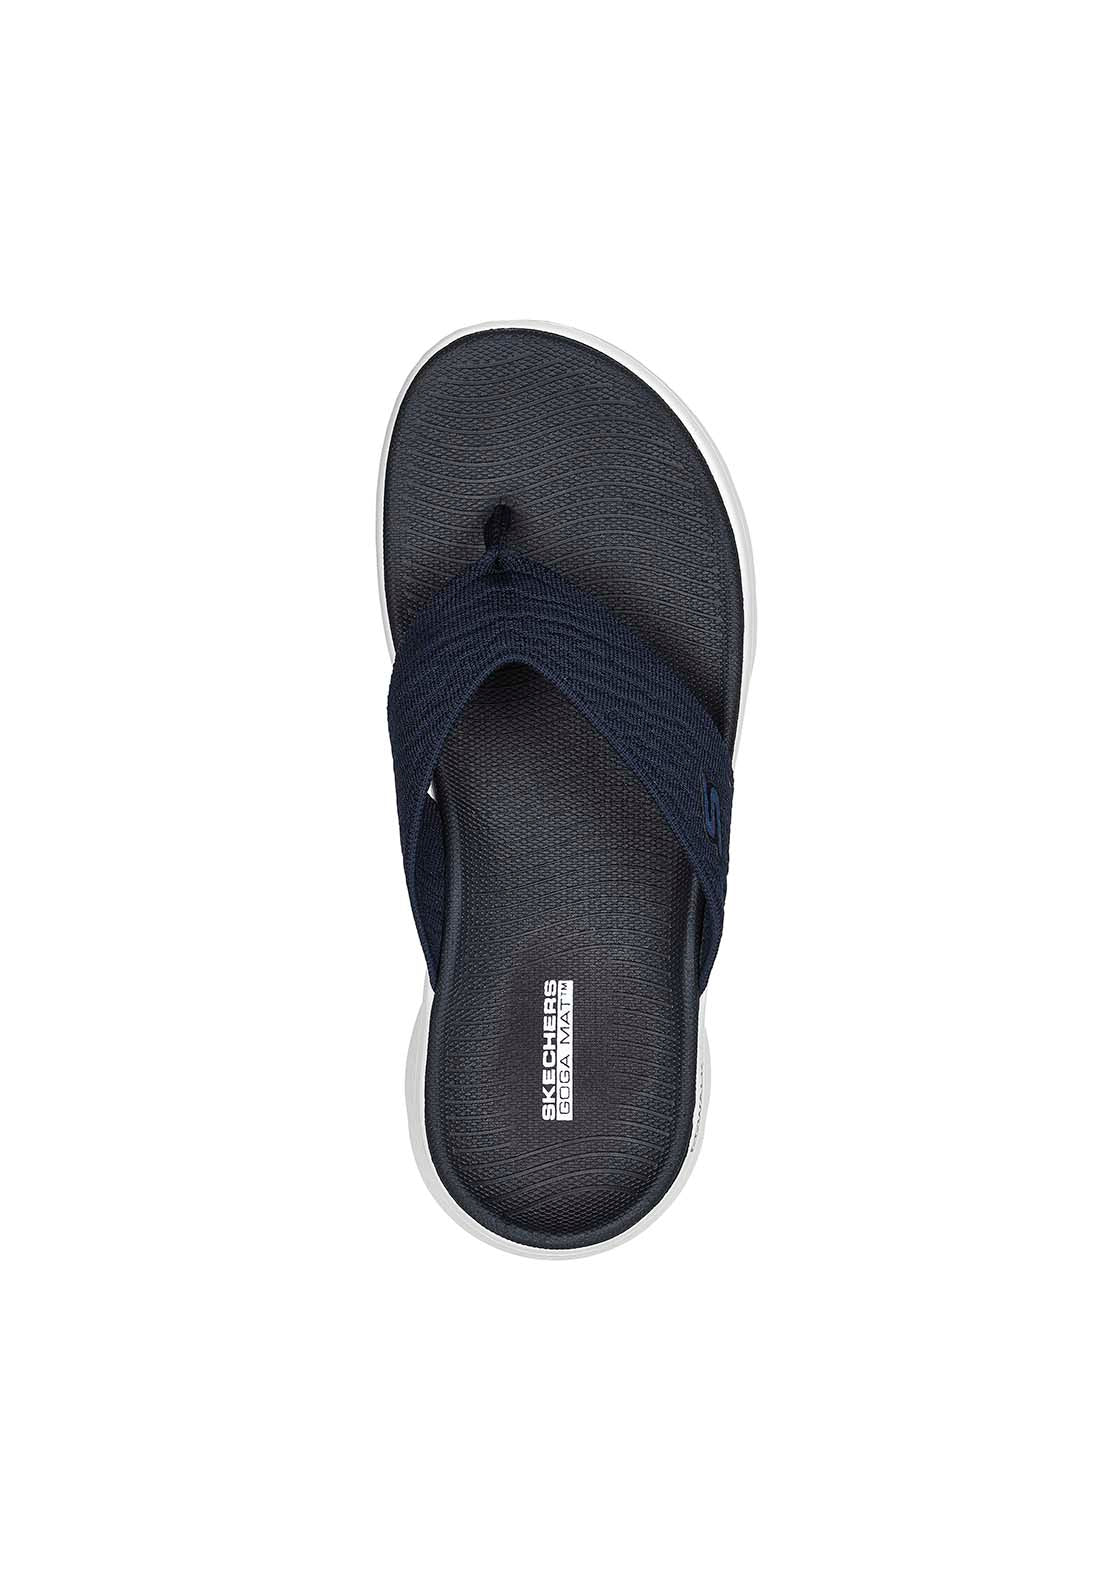 Skechers Go Walk Flex Sandal - Splendor - Navy 3 Shaws Department Stores